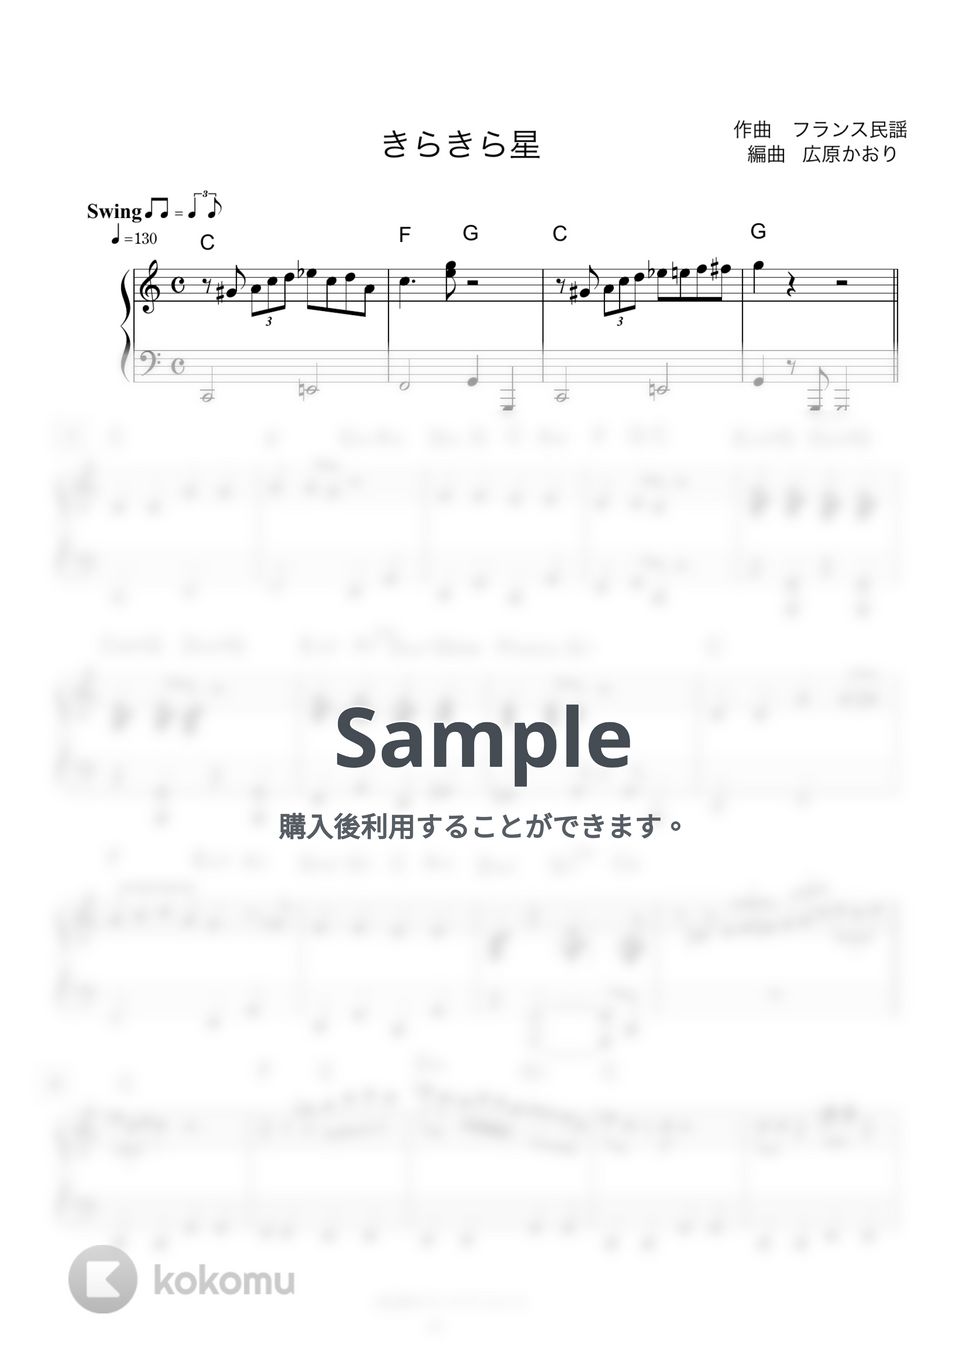 フランス民謡 - きらきら星 JAZZ Piano (Jazzバージョン) by 広原かおり